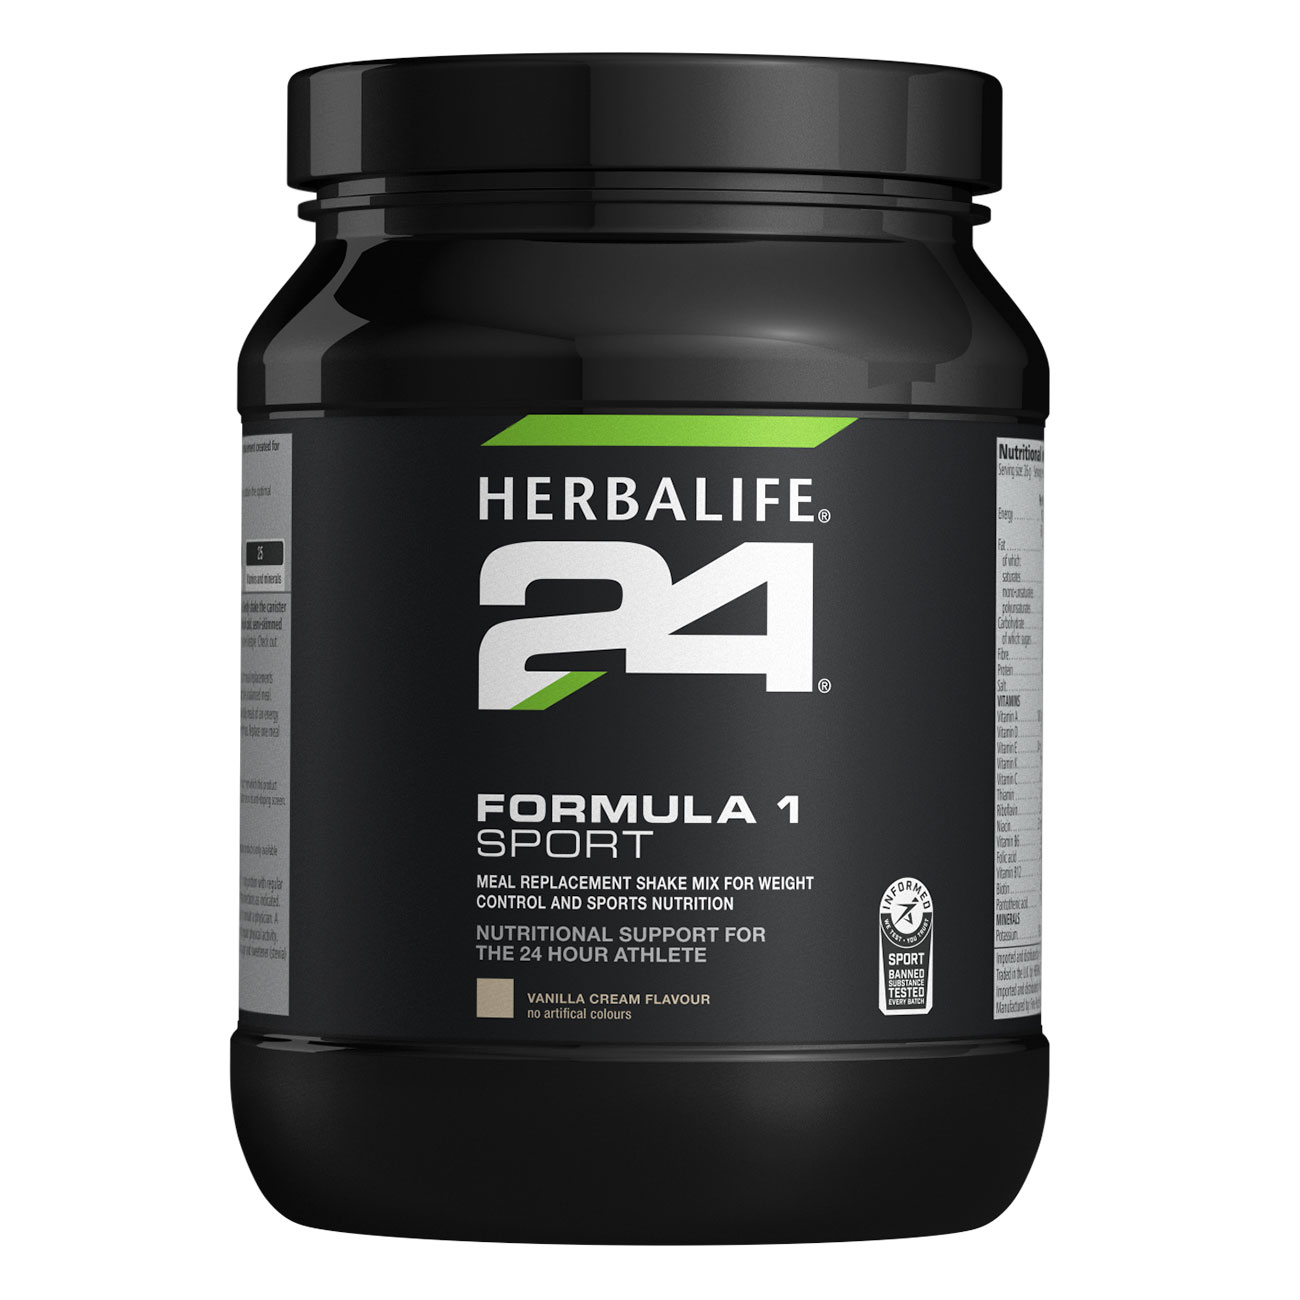 Herbalife24® Formula 1 Sport - Próteindrykkur - Silkimjúkt vanillubragð - Mynd af vöru